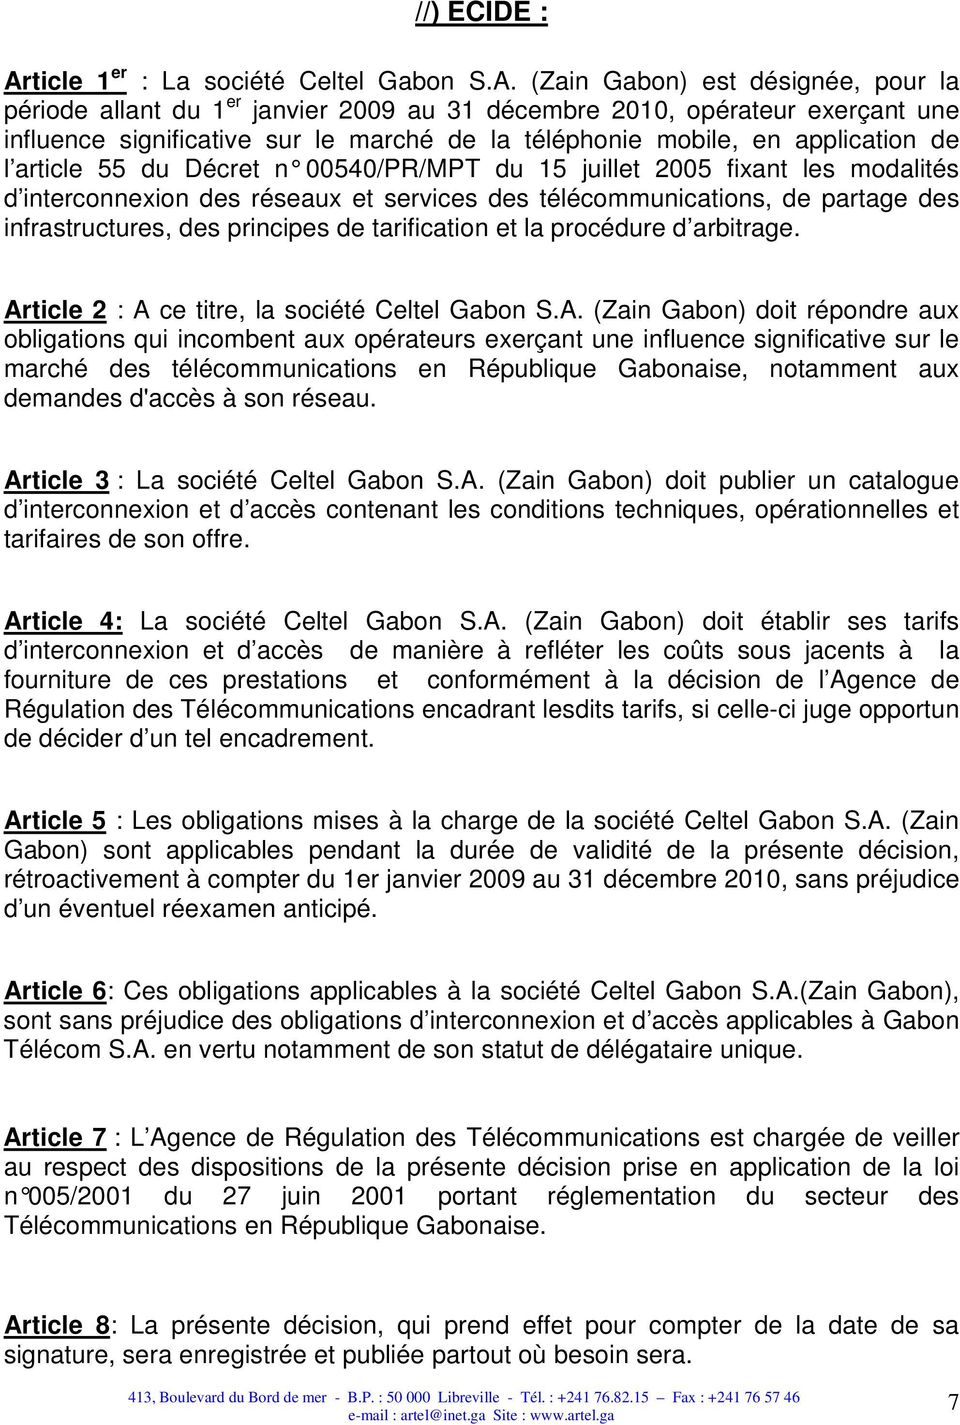 (Zain Gabon) est désignée, pour la période allant du 1 er janvier 2009 au 31 décembre 2010, opérateur exerçant une influence significative sur le marché de la téléphonie mobile, en application de l